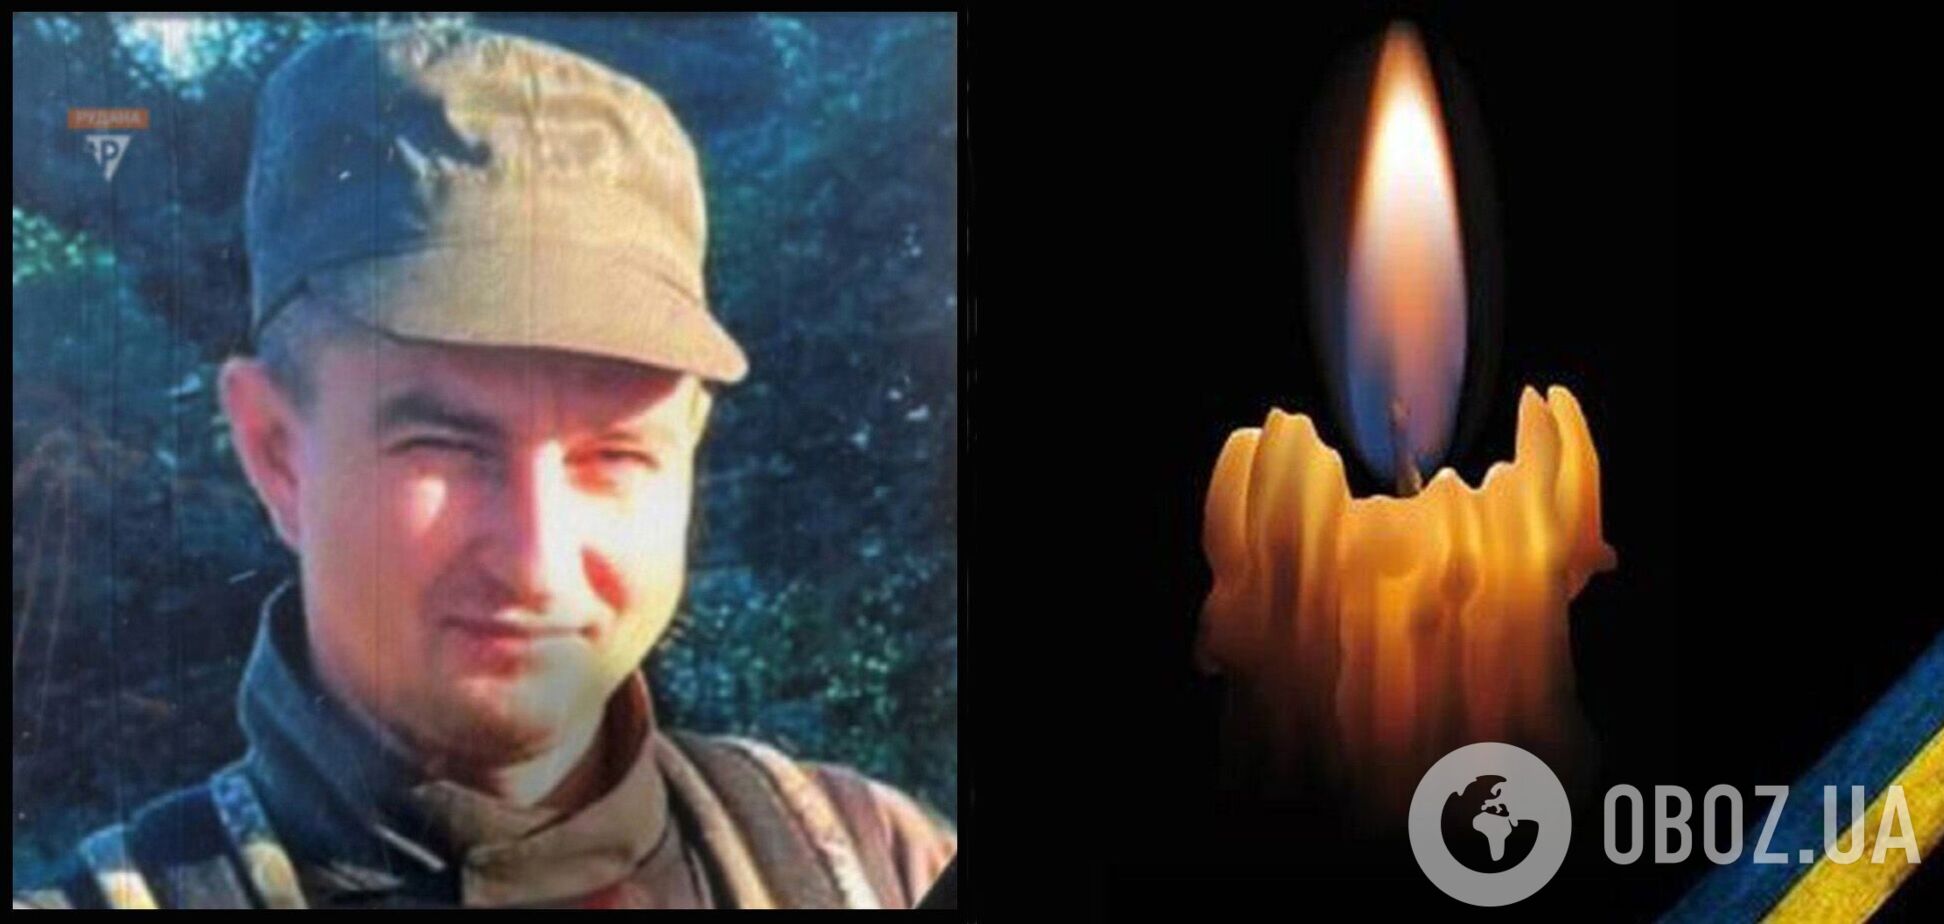 Без отца остался сын: в Кривом Роге простились с защитником, погибшим в боях за Украину. Фото